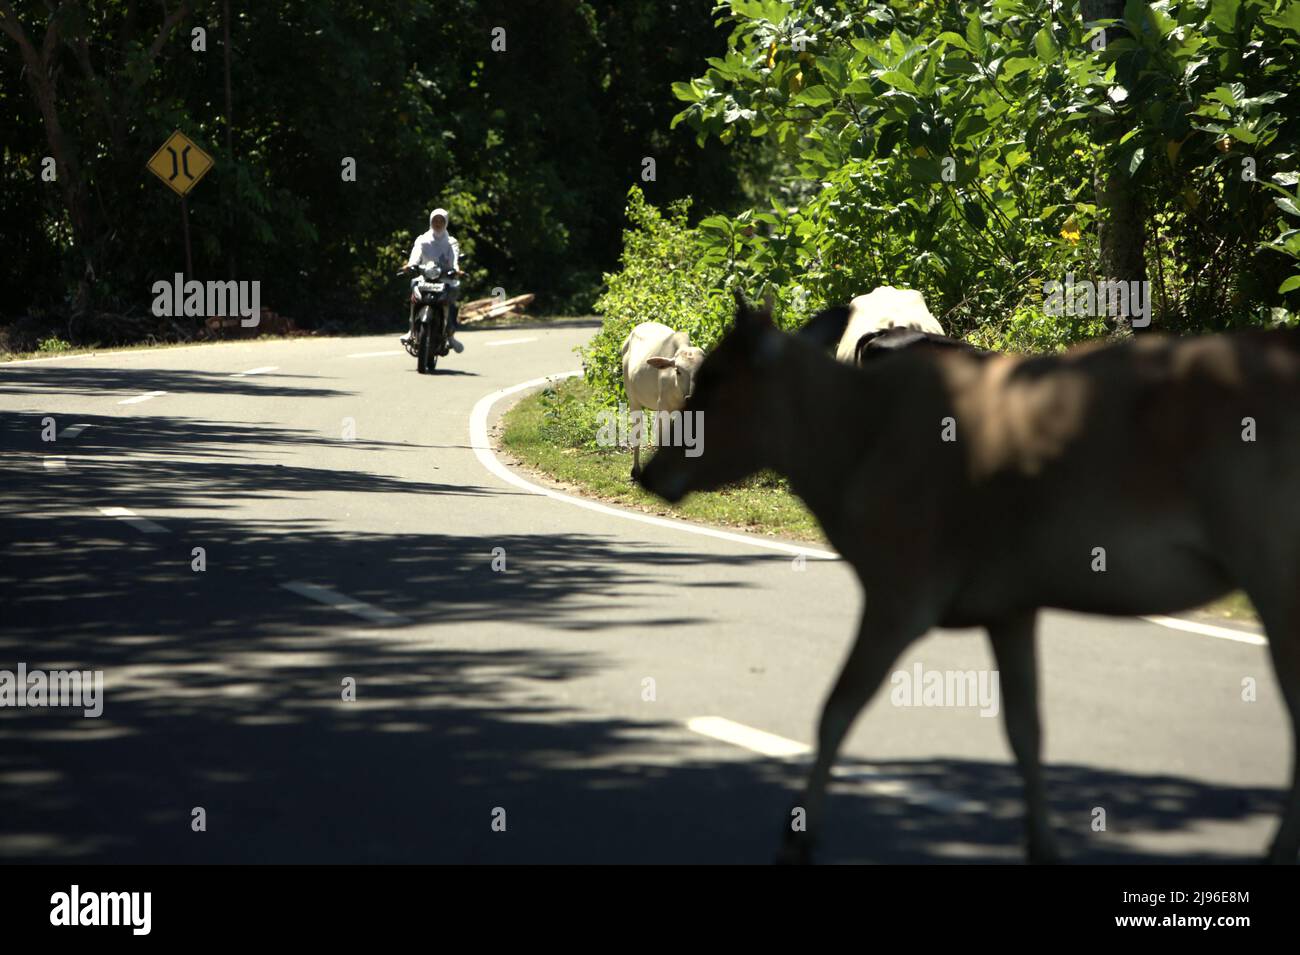 Eine junge Frau in Schuluniform, die auf einem Motorrad unterwegs ist und dabei ist, an einer Kuh vorbei zu gehen, die im Küstengebiet von Krui, Pesisir Barat, Lampung, Indonesien, unterwegs ist. Stockfoto